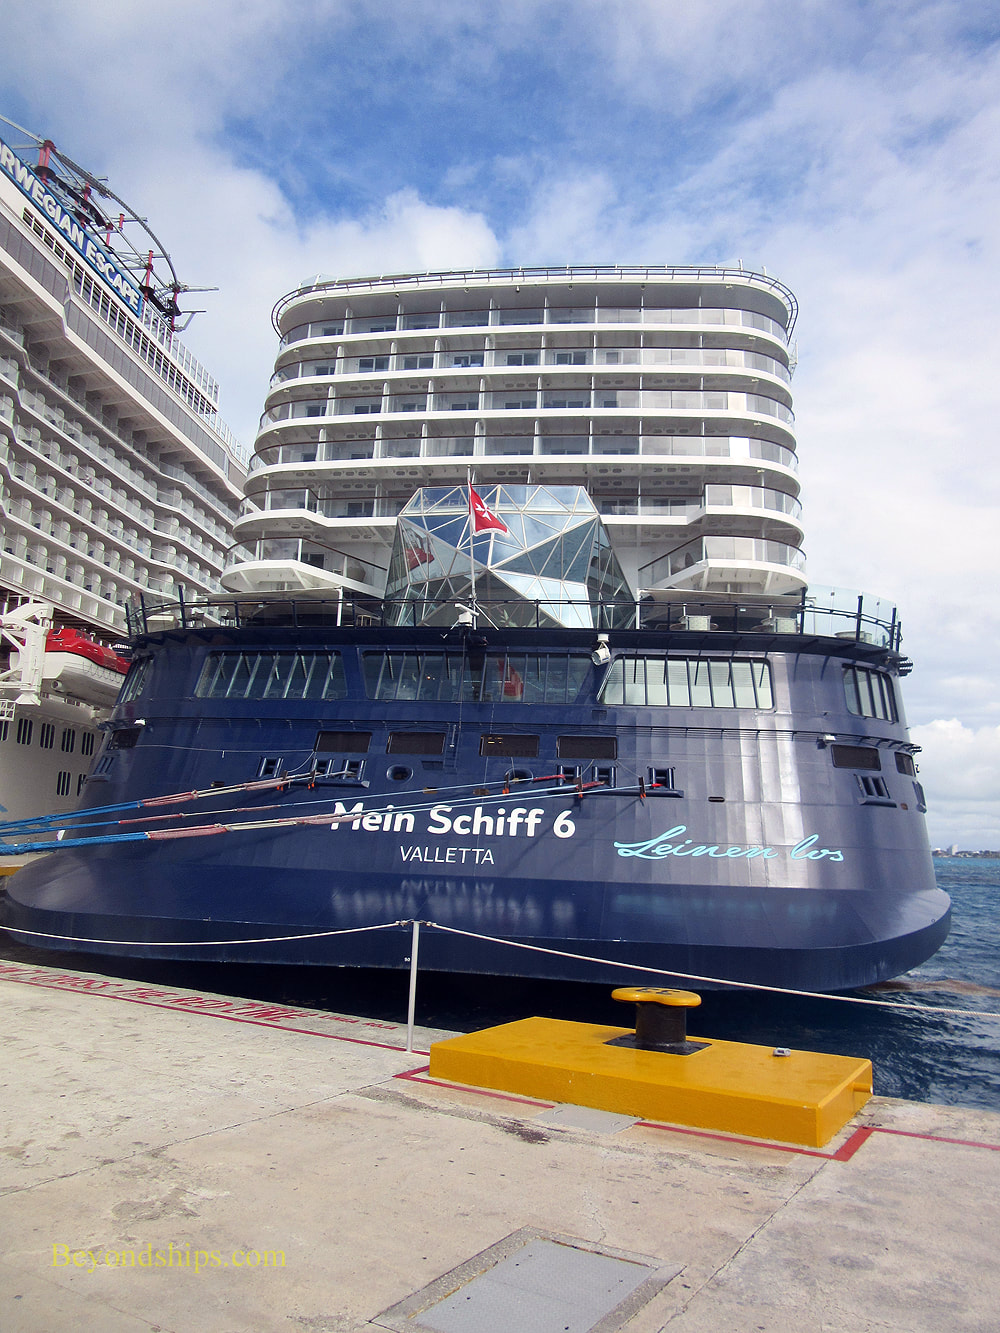 Cruise ship Mein Schiff 6